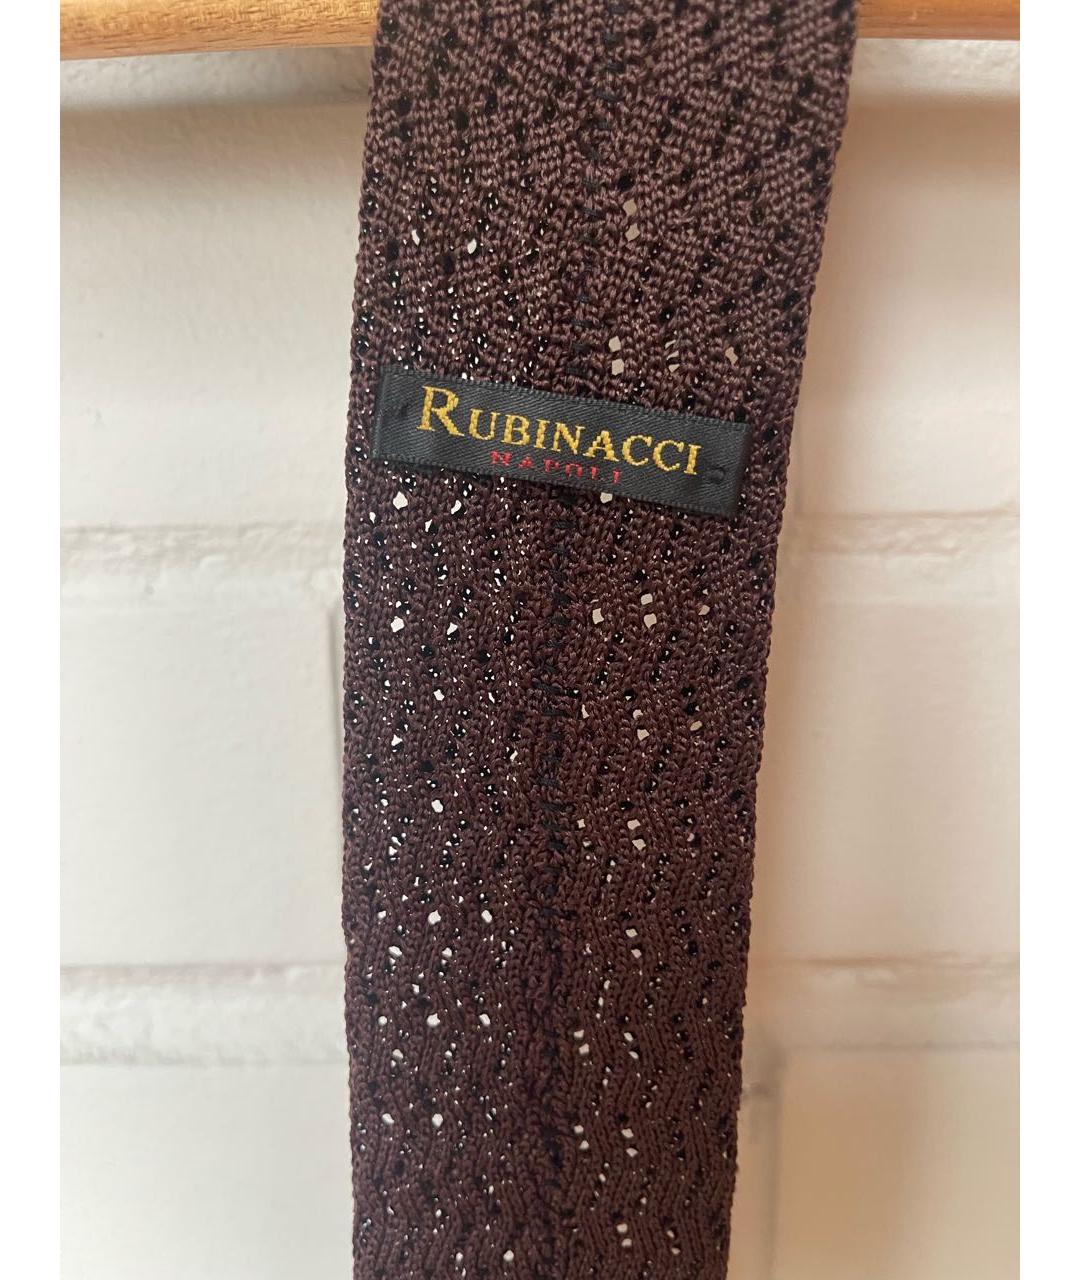 RUBINACCI Коричневый шелковый галстук, фото 3